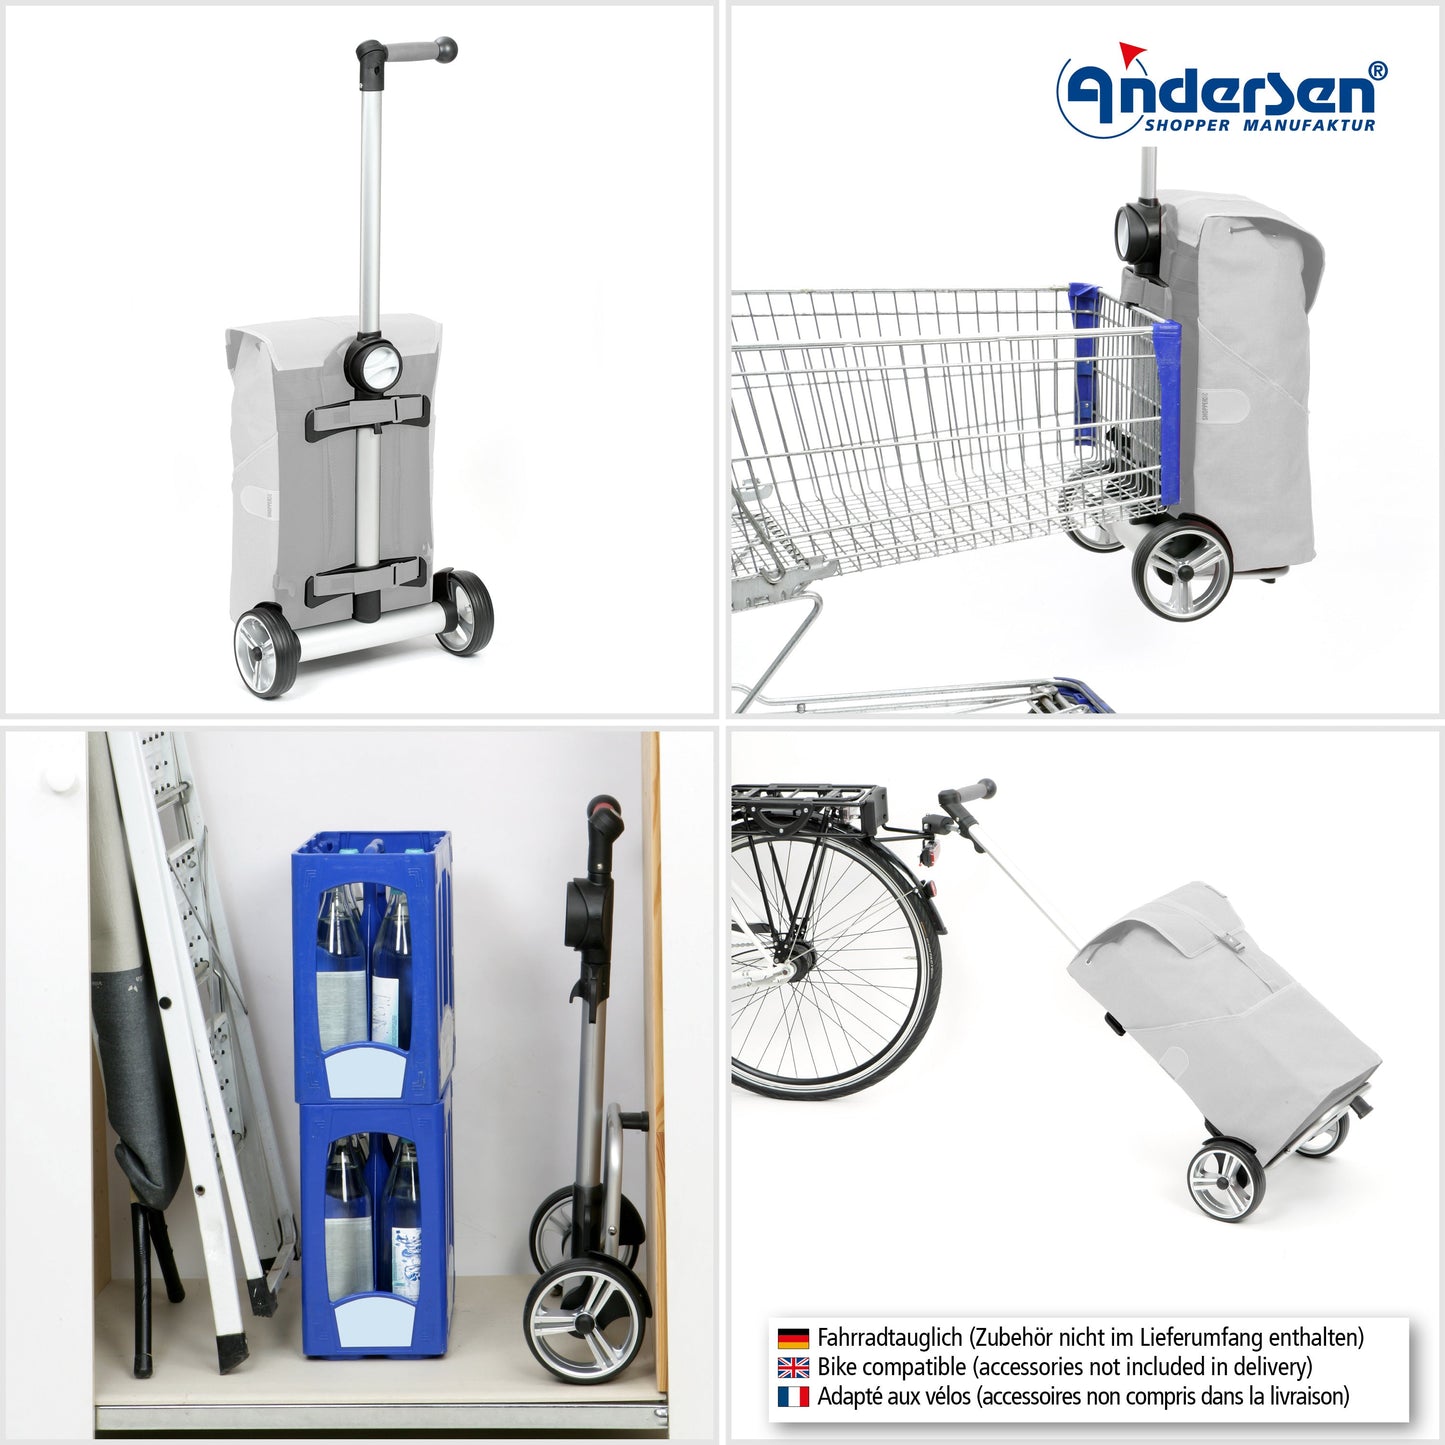 Andersen Shopper Manufaktur-Unus Shopper Eske grün-www.shopping-trolley.ch-bild5